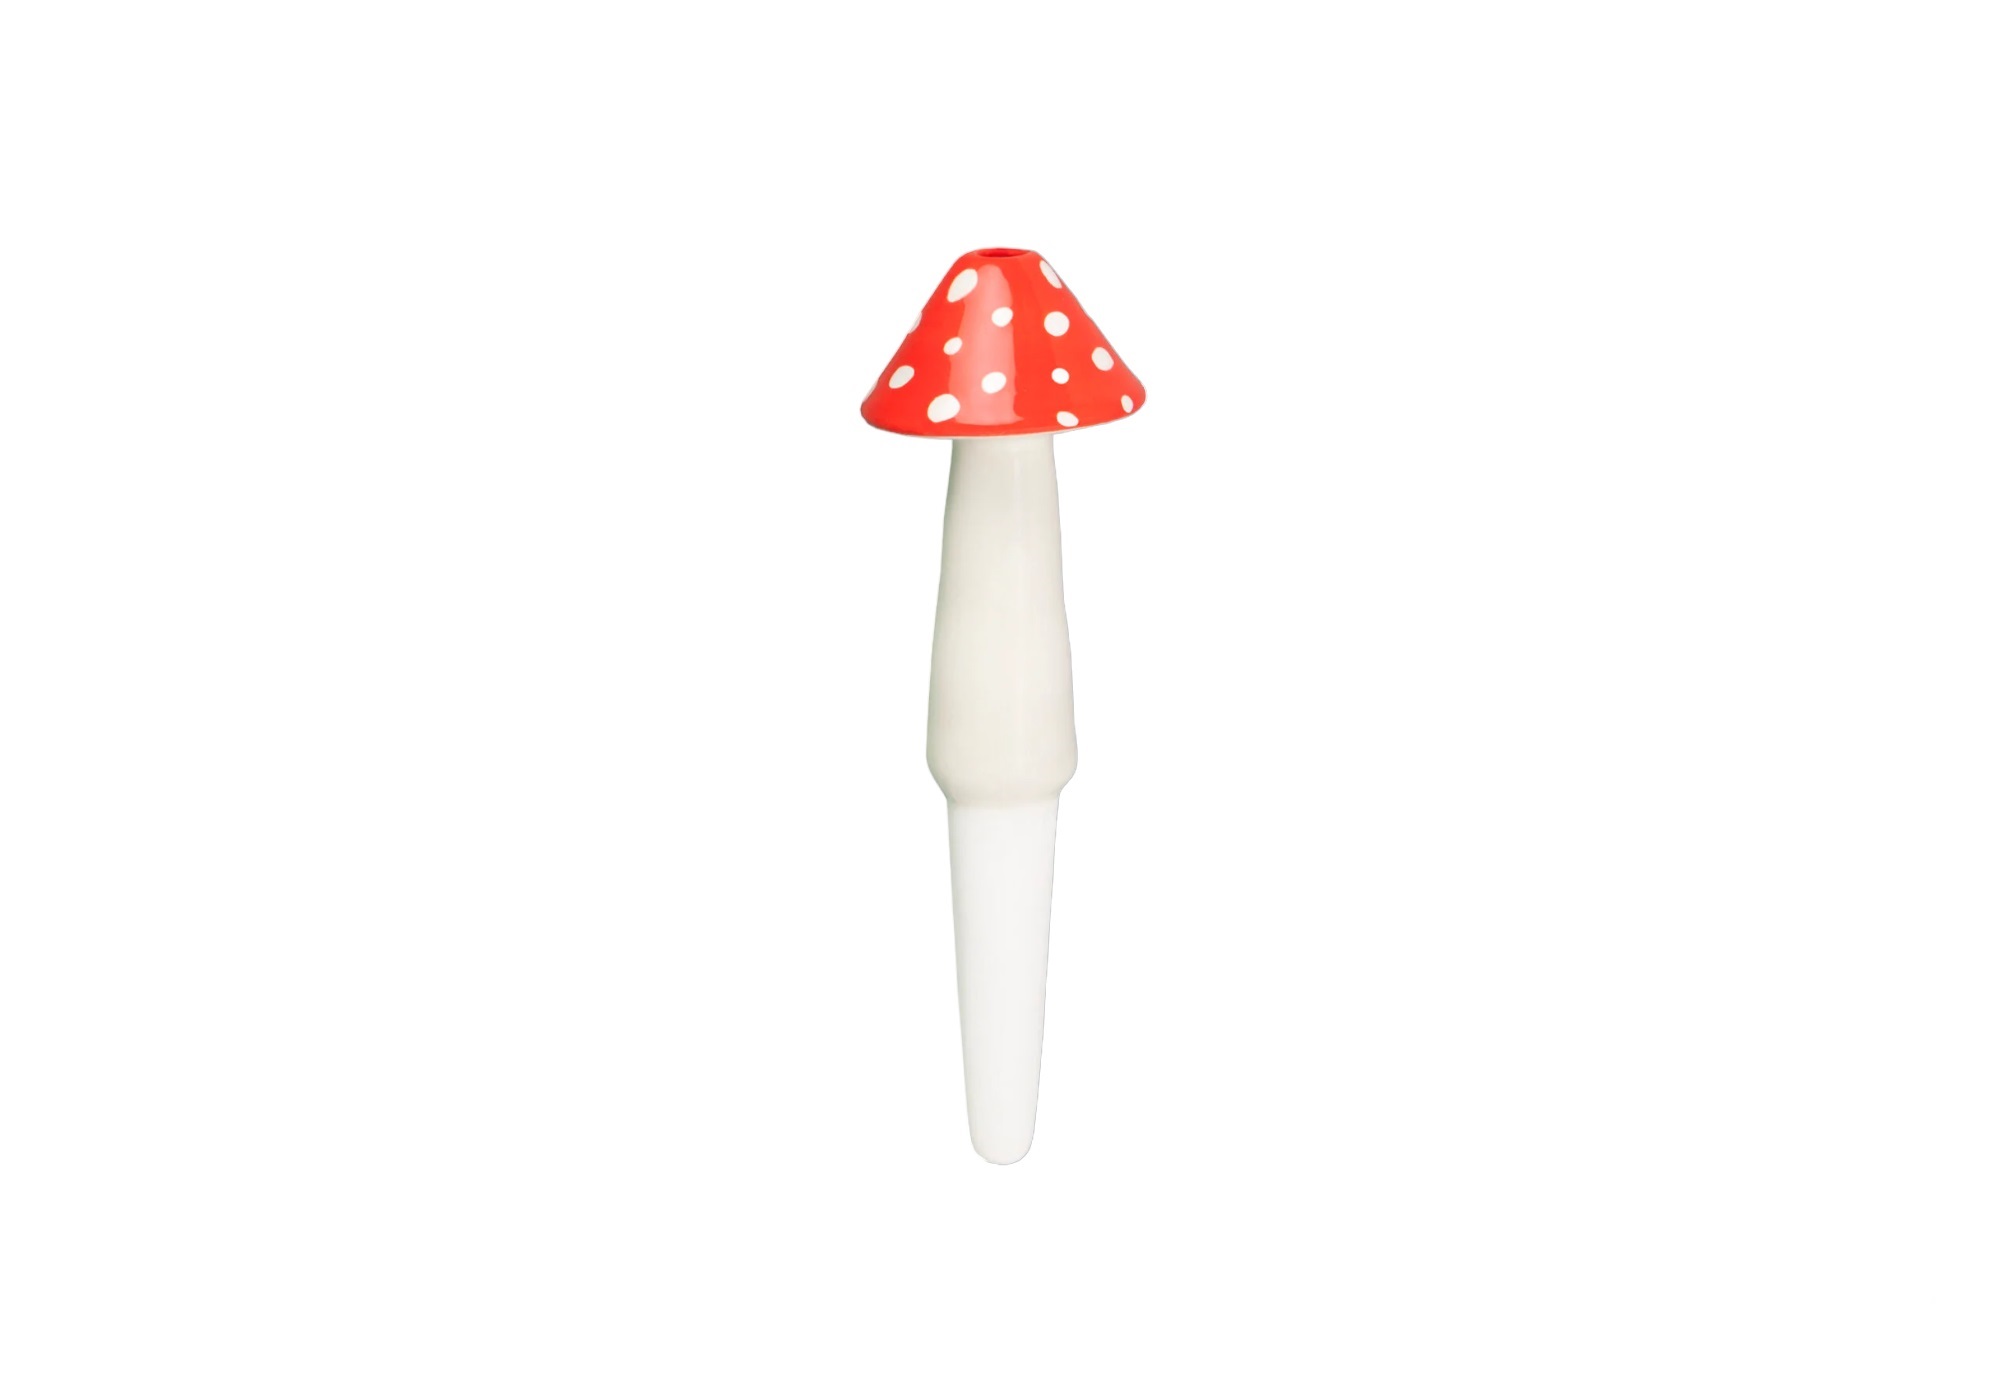 Self-watering mushroom amanita